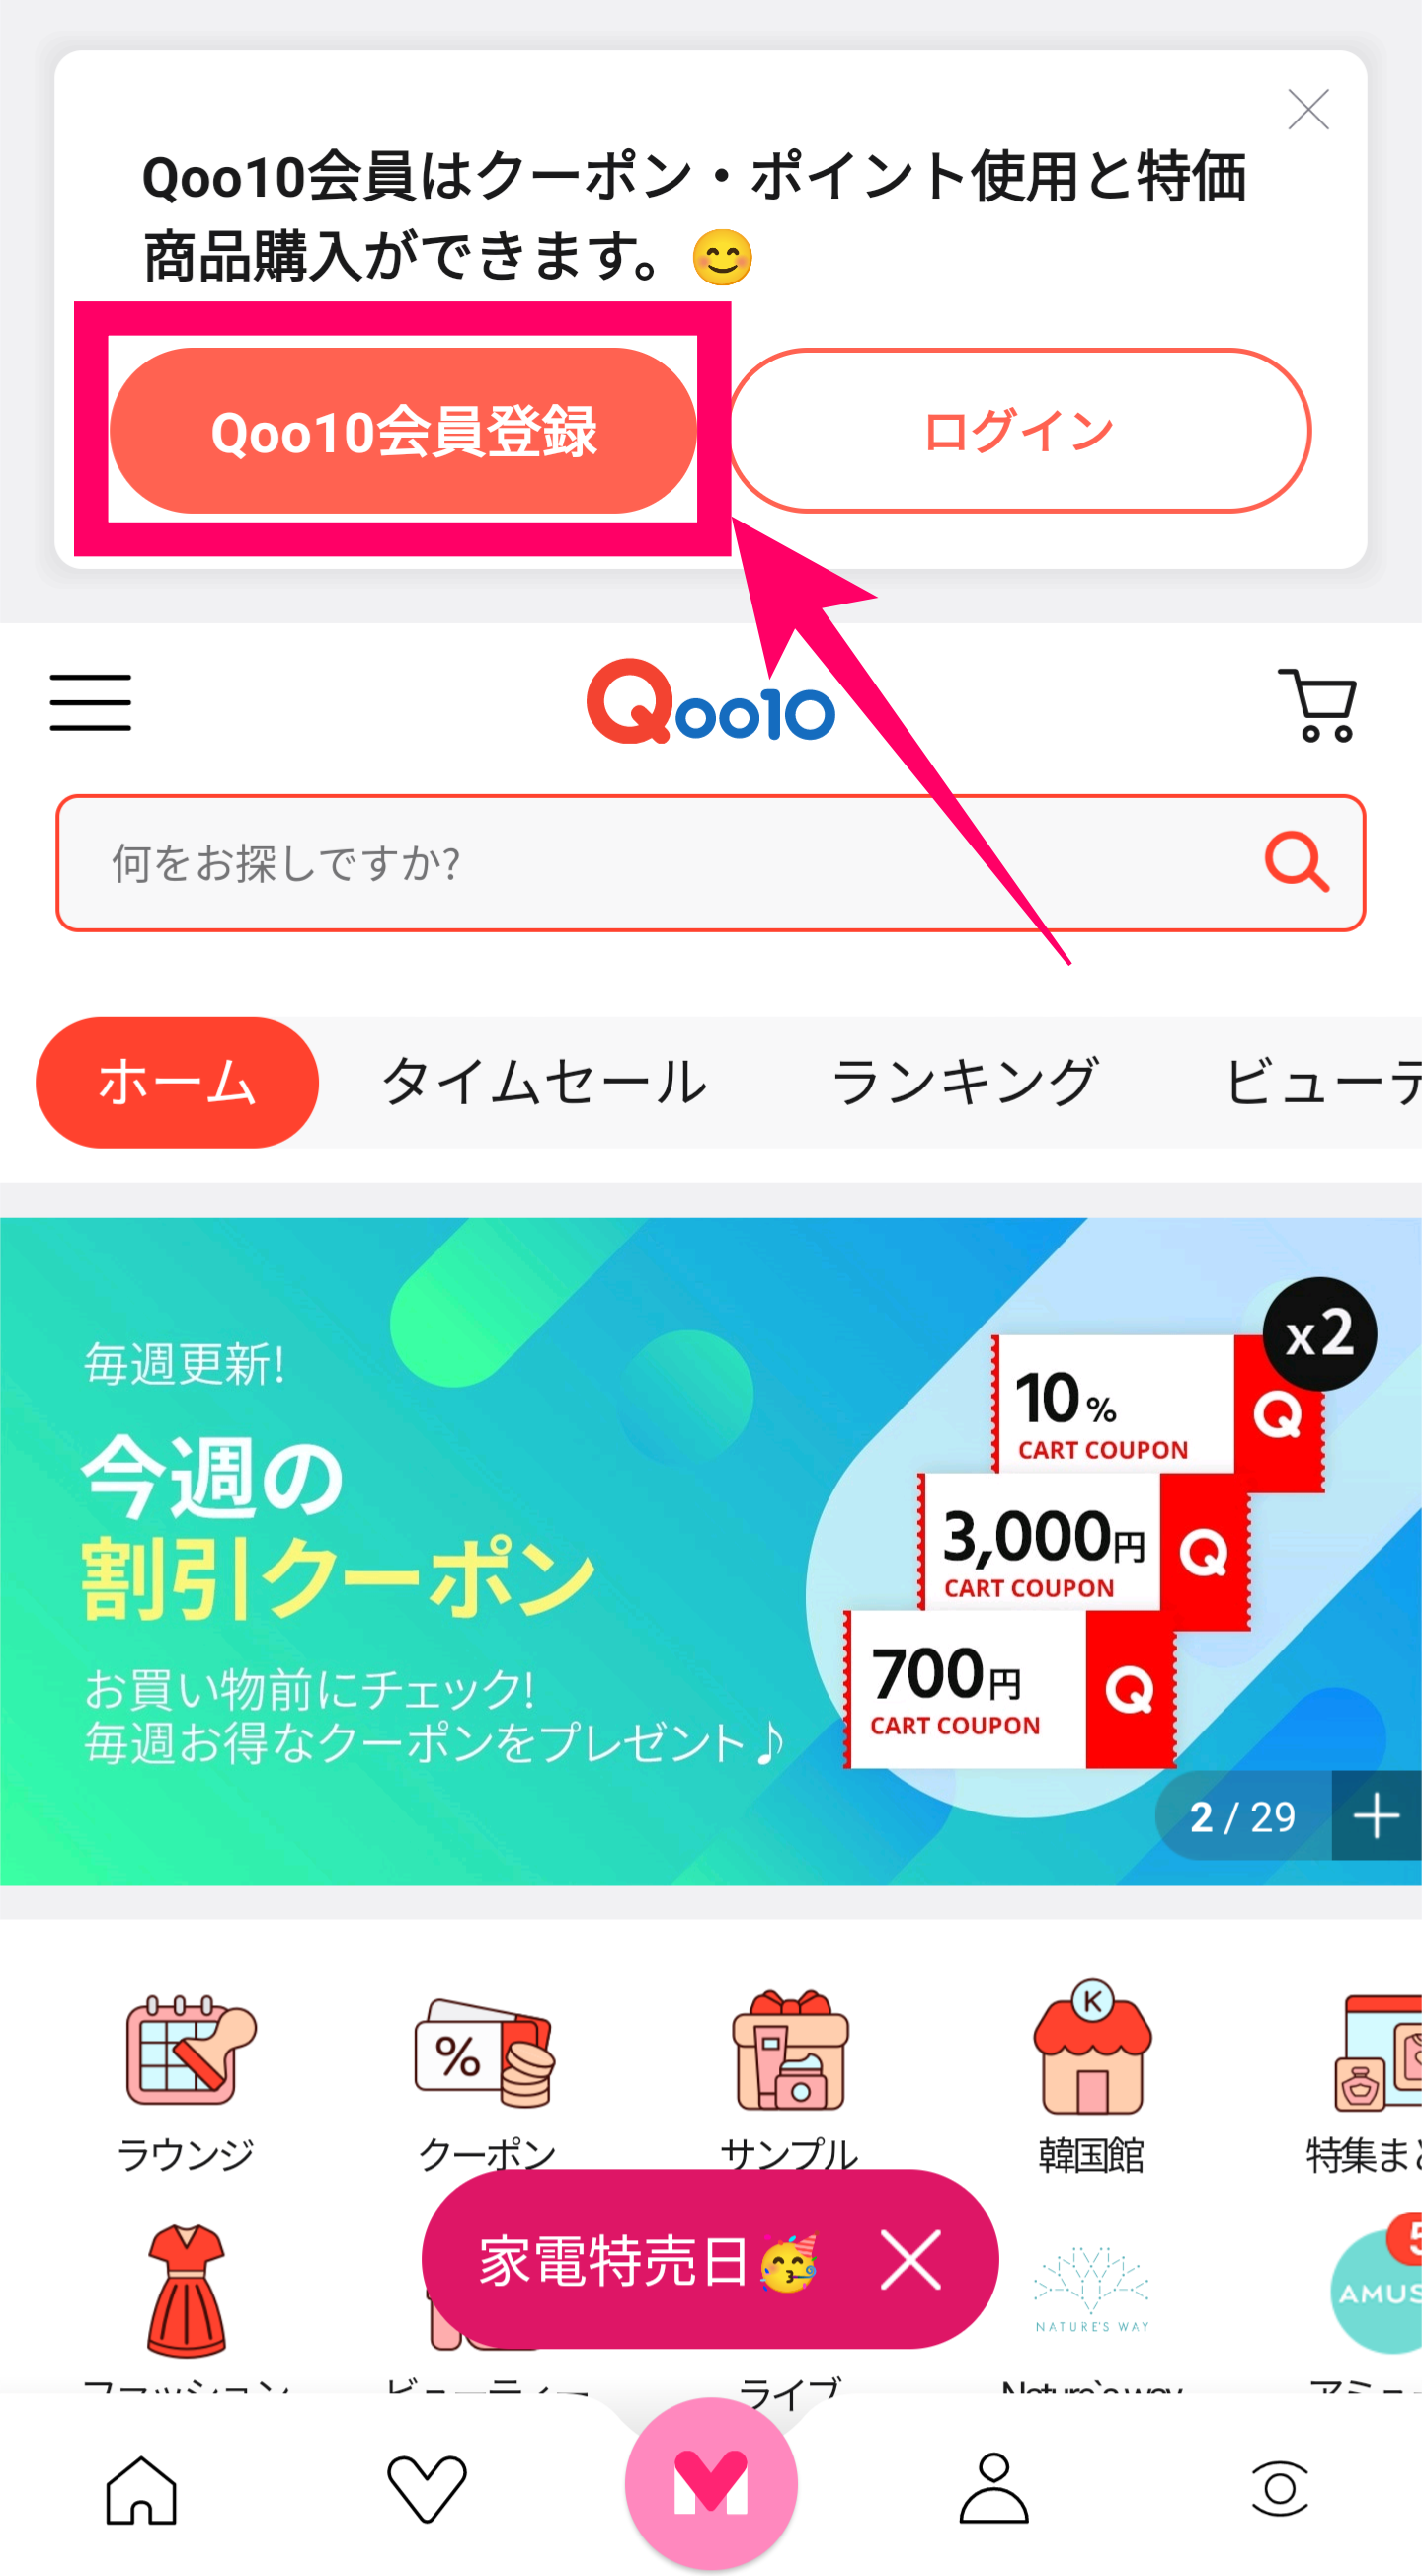 Qoo10-登録ボタン